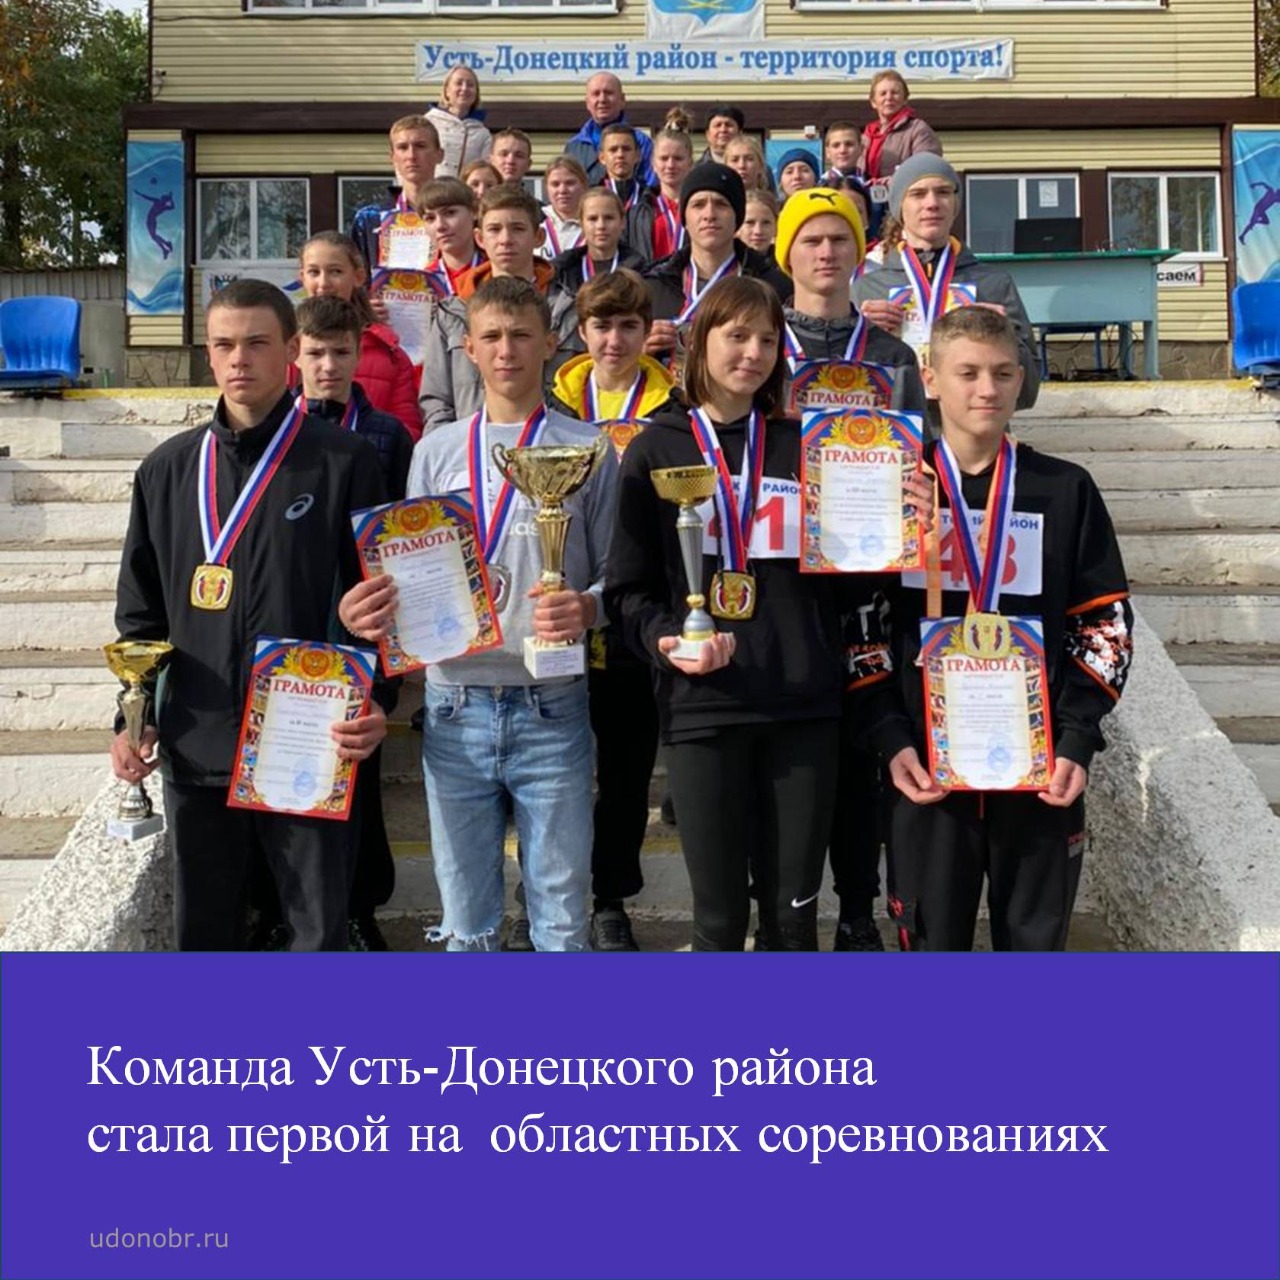 Команда Усть-Донецкого района стала первой на областных соревнованиях